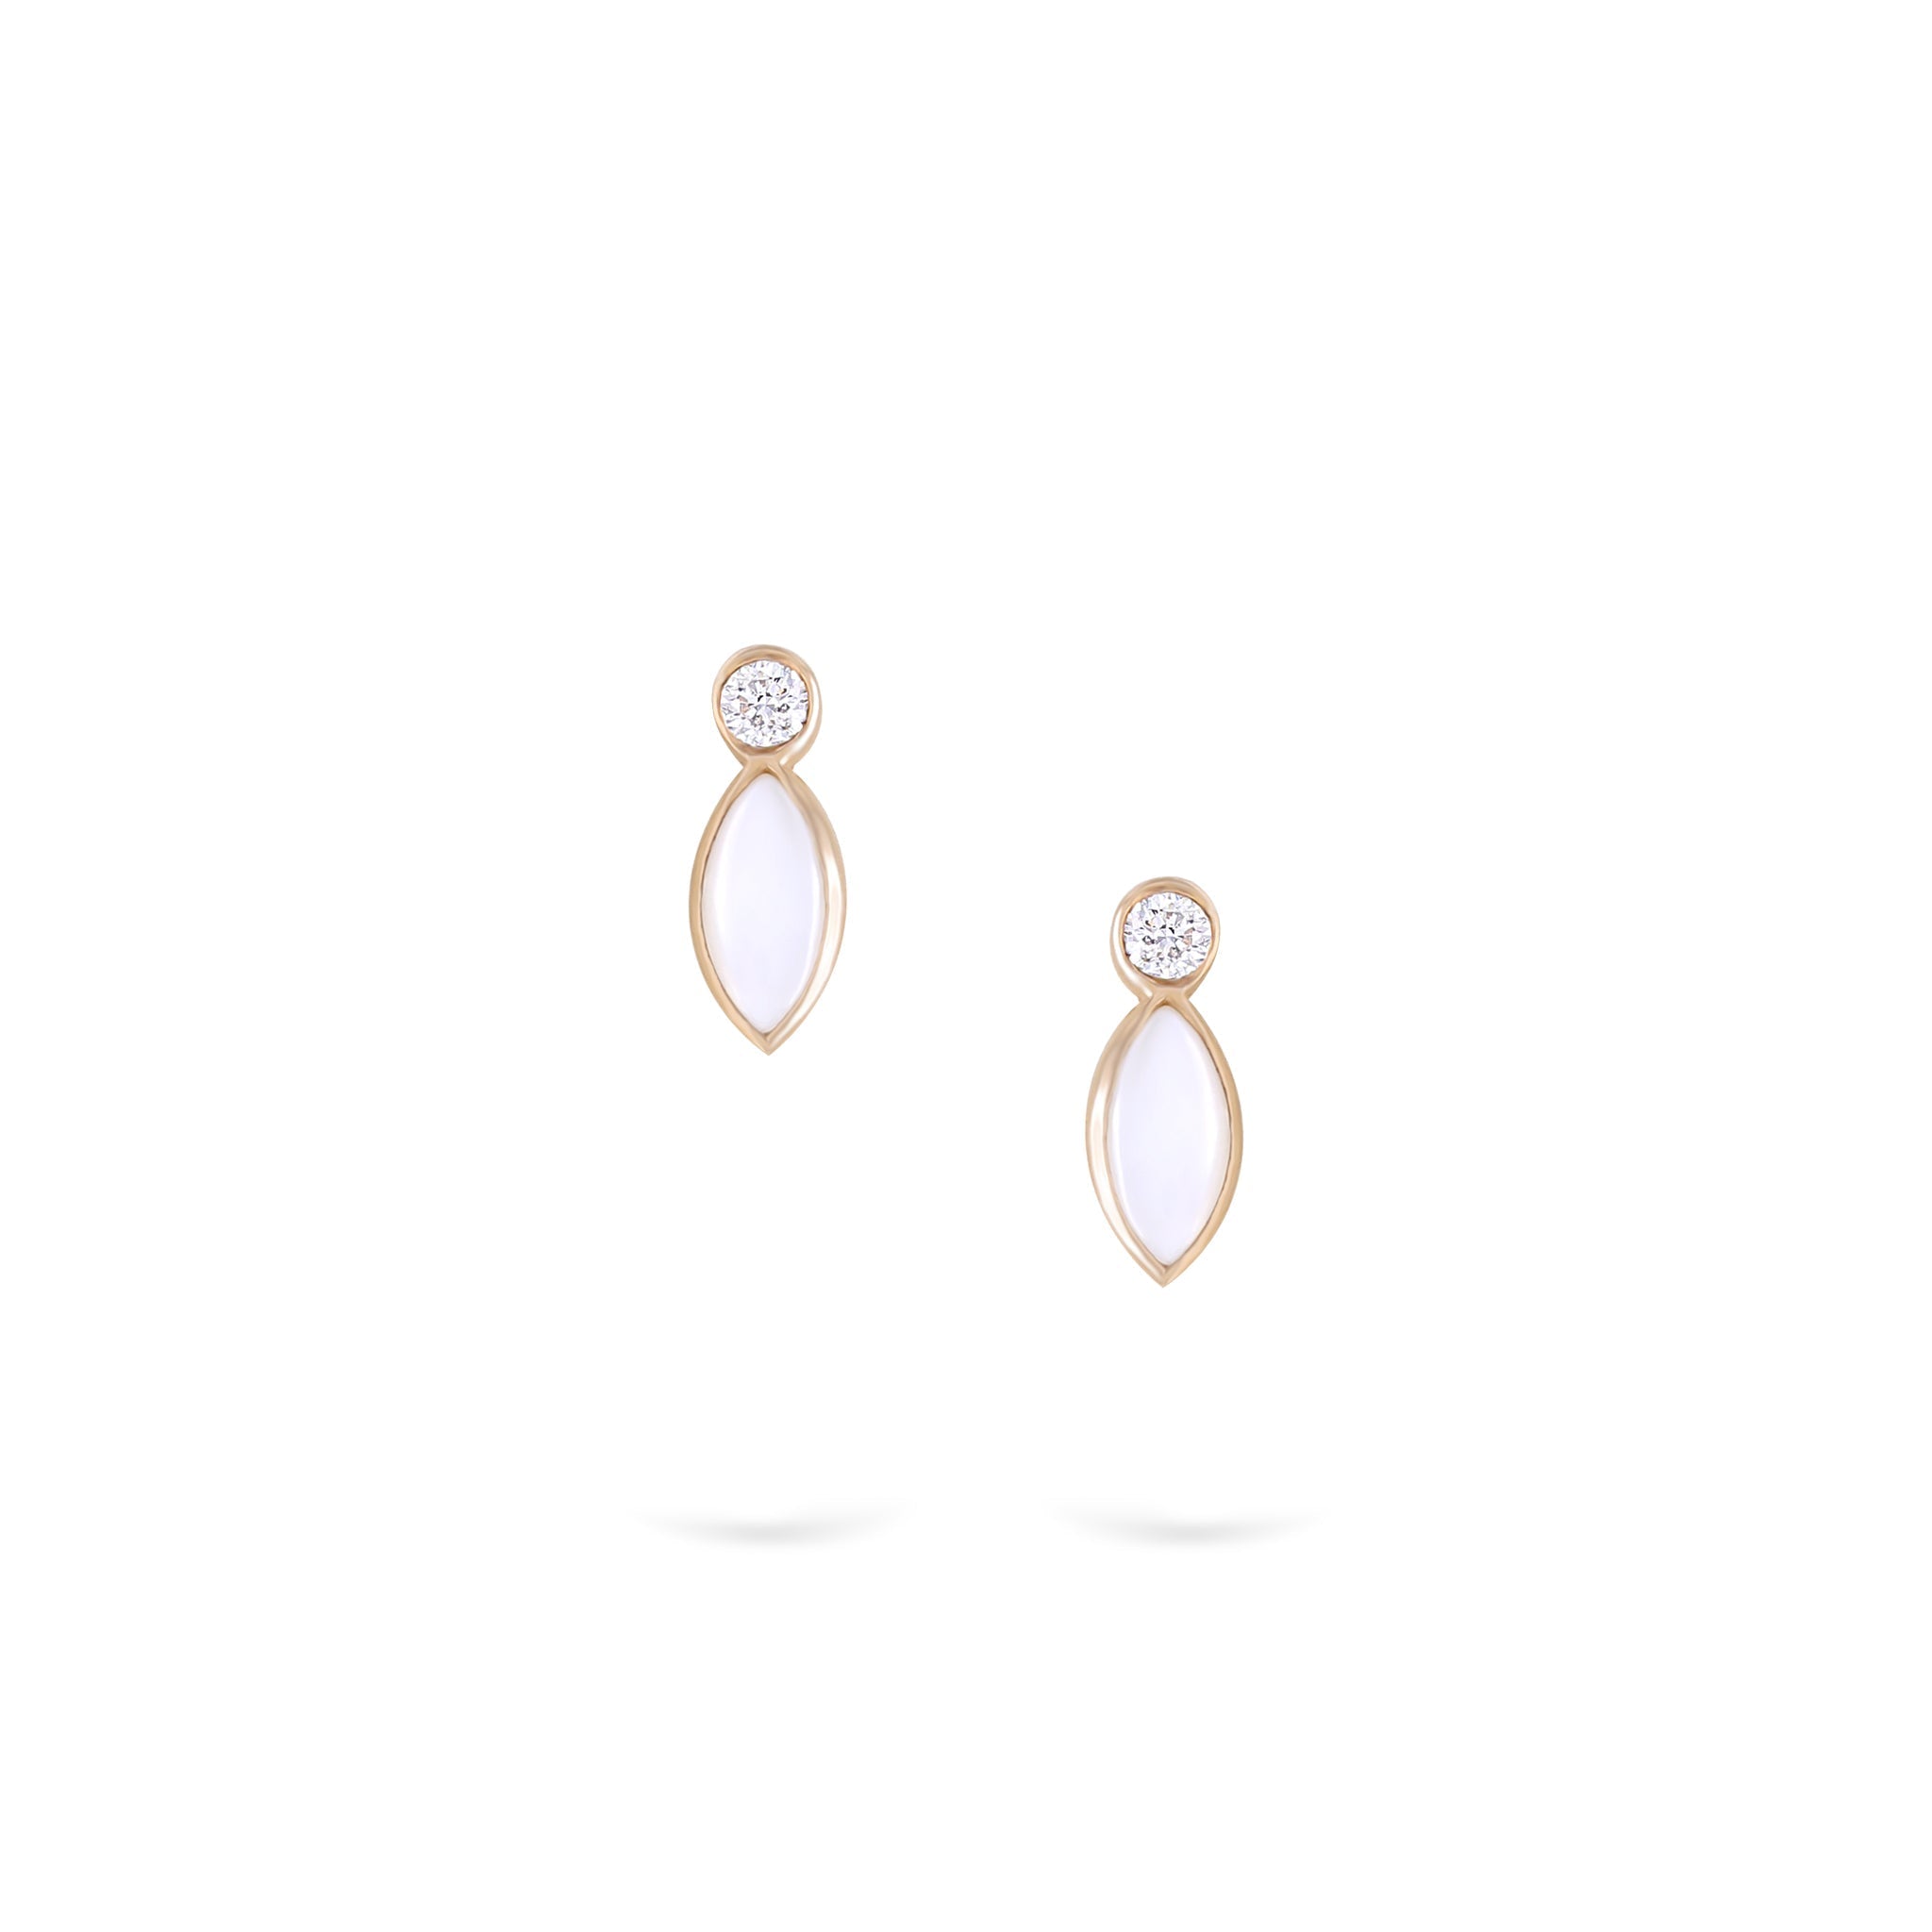 Gilda Jewelry Breeze Studs | Diamond Earrings |14K Gold - 14K Rose / Pair: 0.07 Cts. - earrings Zengoda Shop online